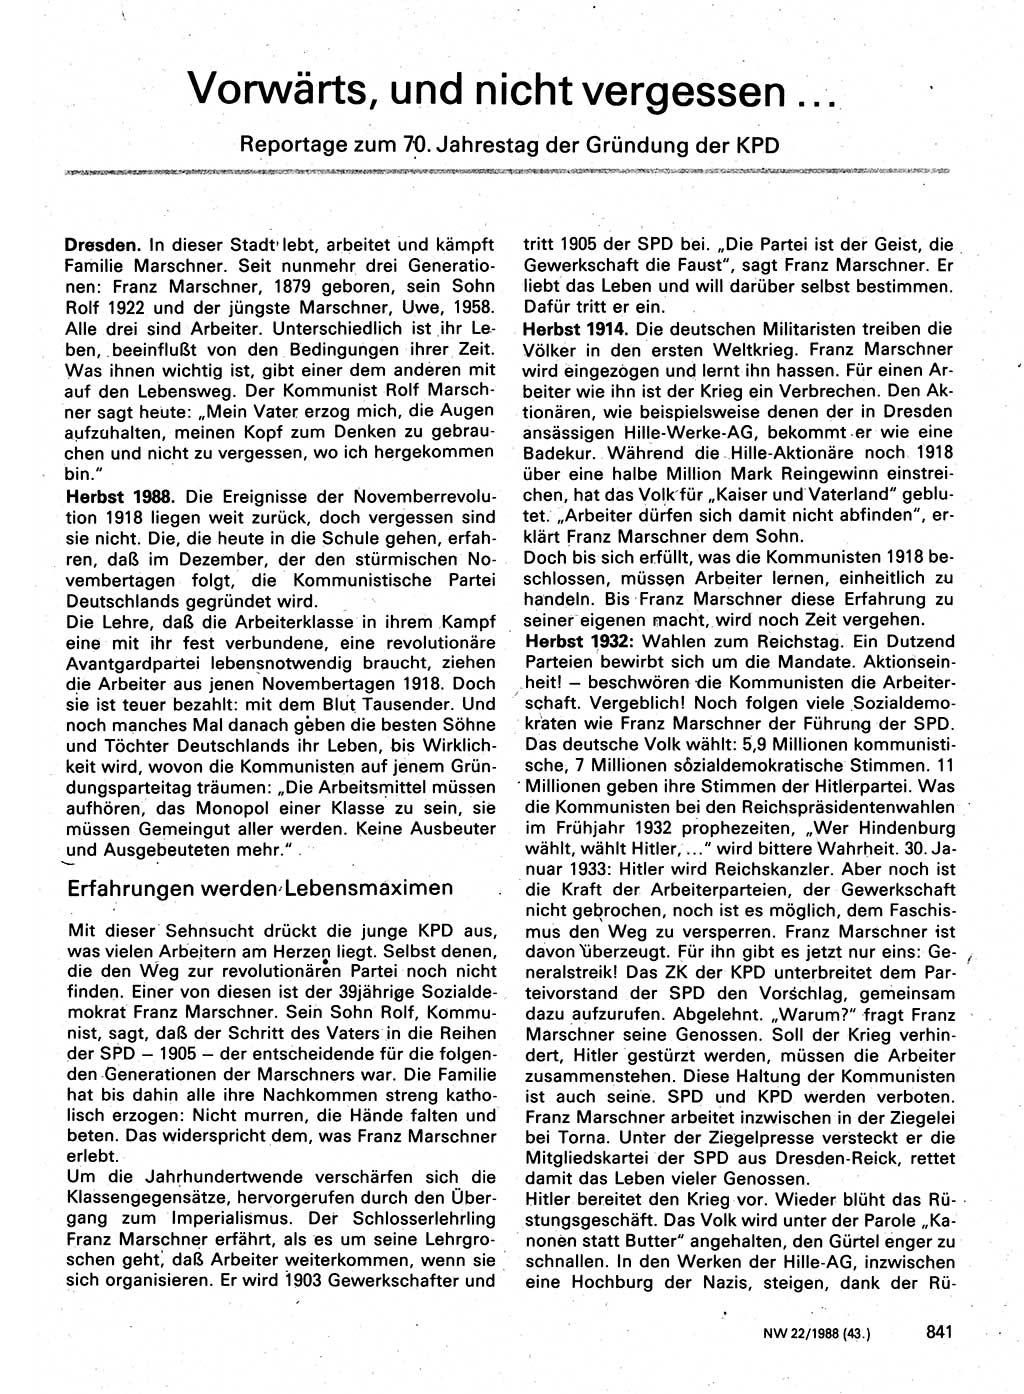 Neuer Weg (NW), Organ des Zentralkomitees (ZK) der SED (Sozialistische Einheitspartei Deutschlands) für Fragen des Parteilebens, 43. Jahrgang [Deutsche Demokratische Republik (DDR)] 1988, Seite 841 (NW ZK SED DDR 1988, S. 841)